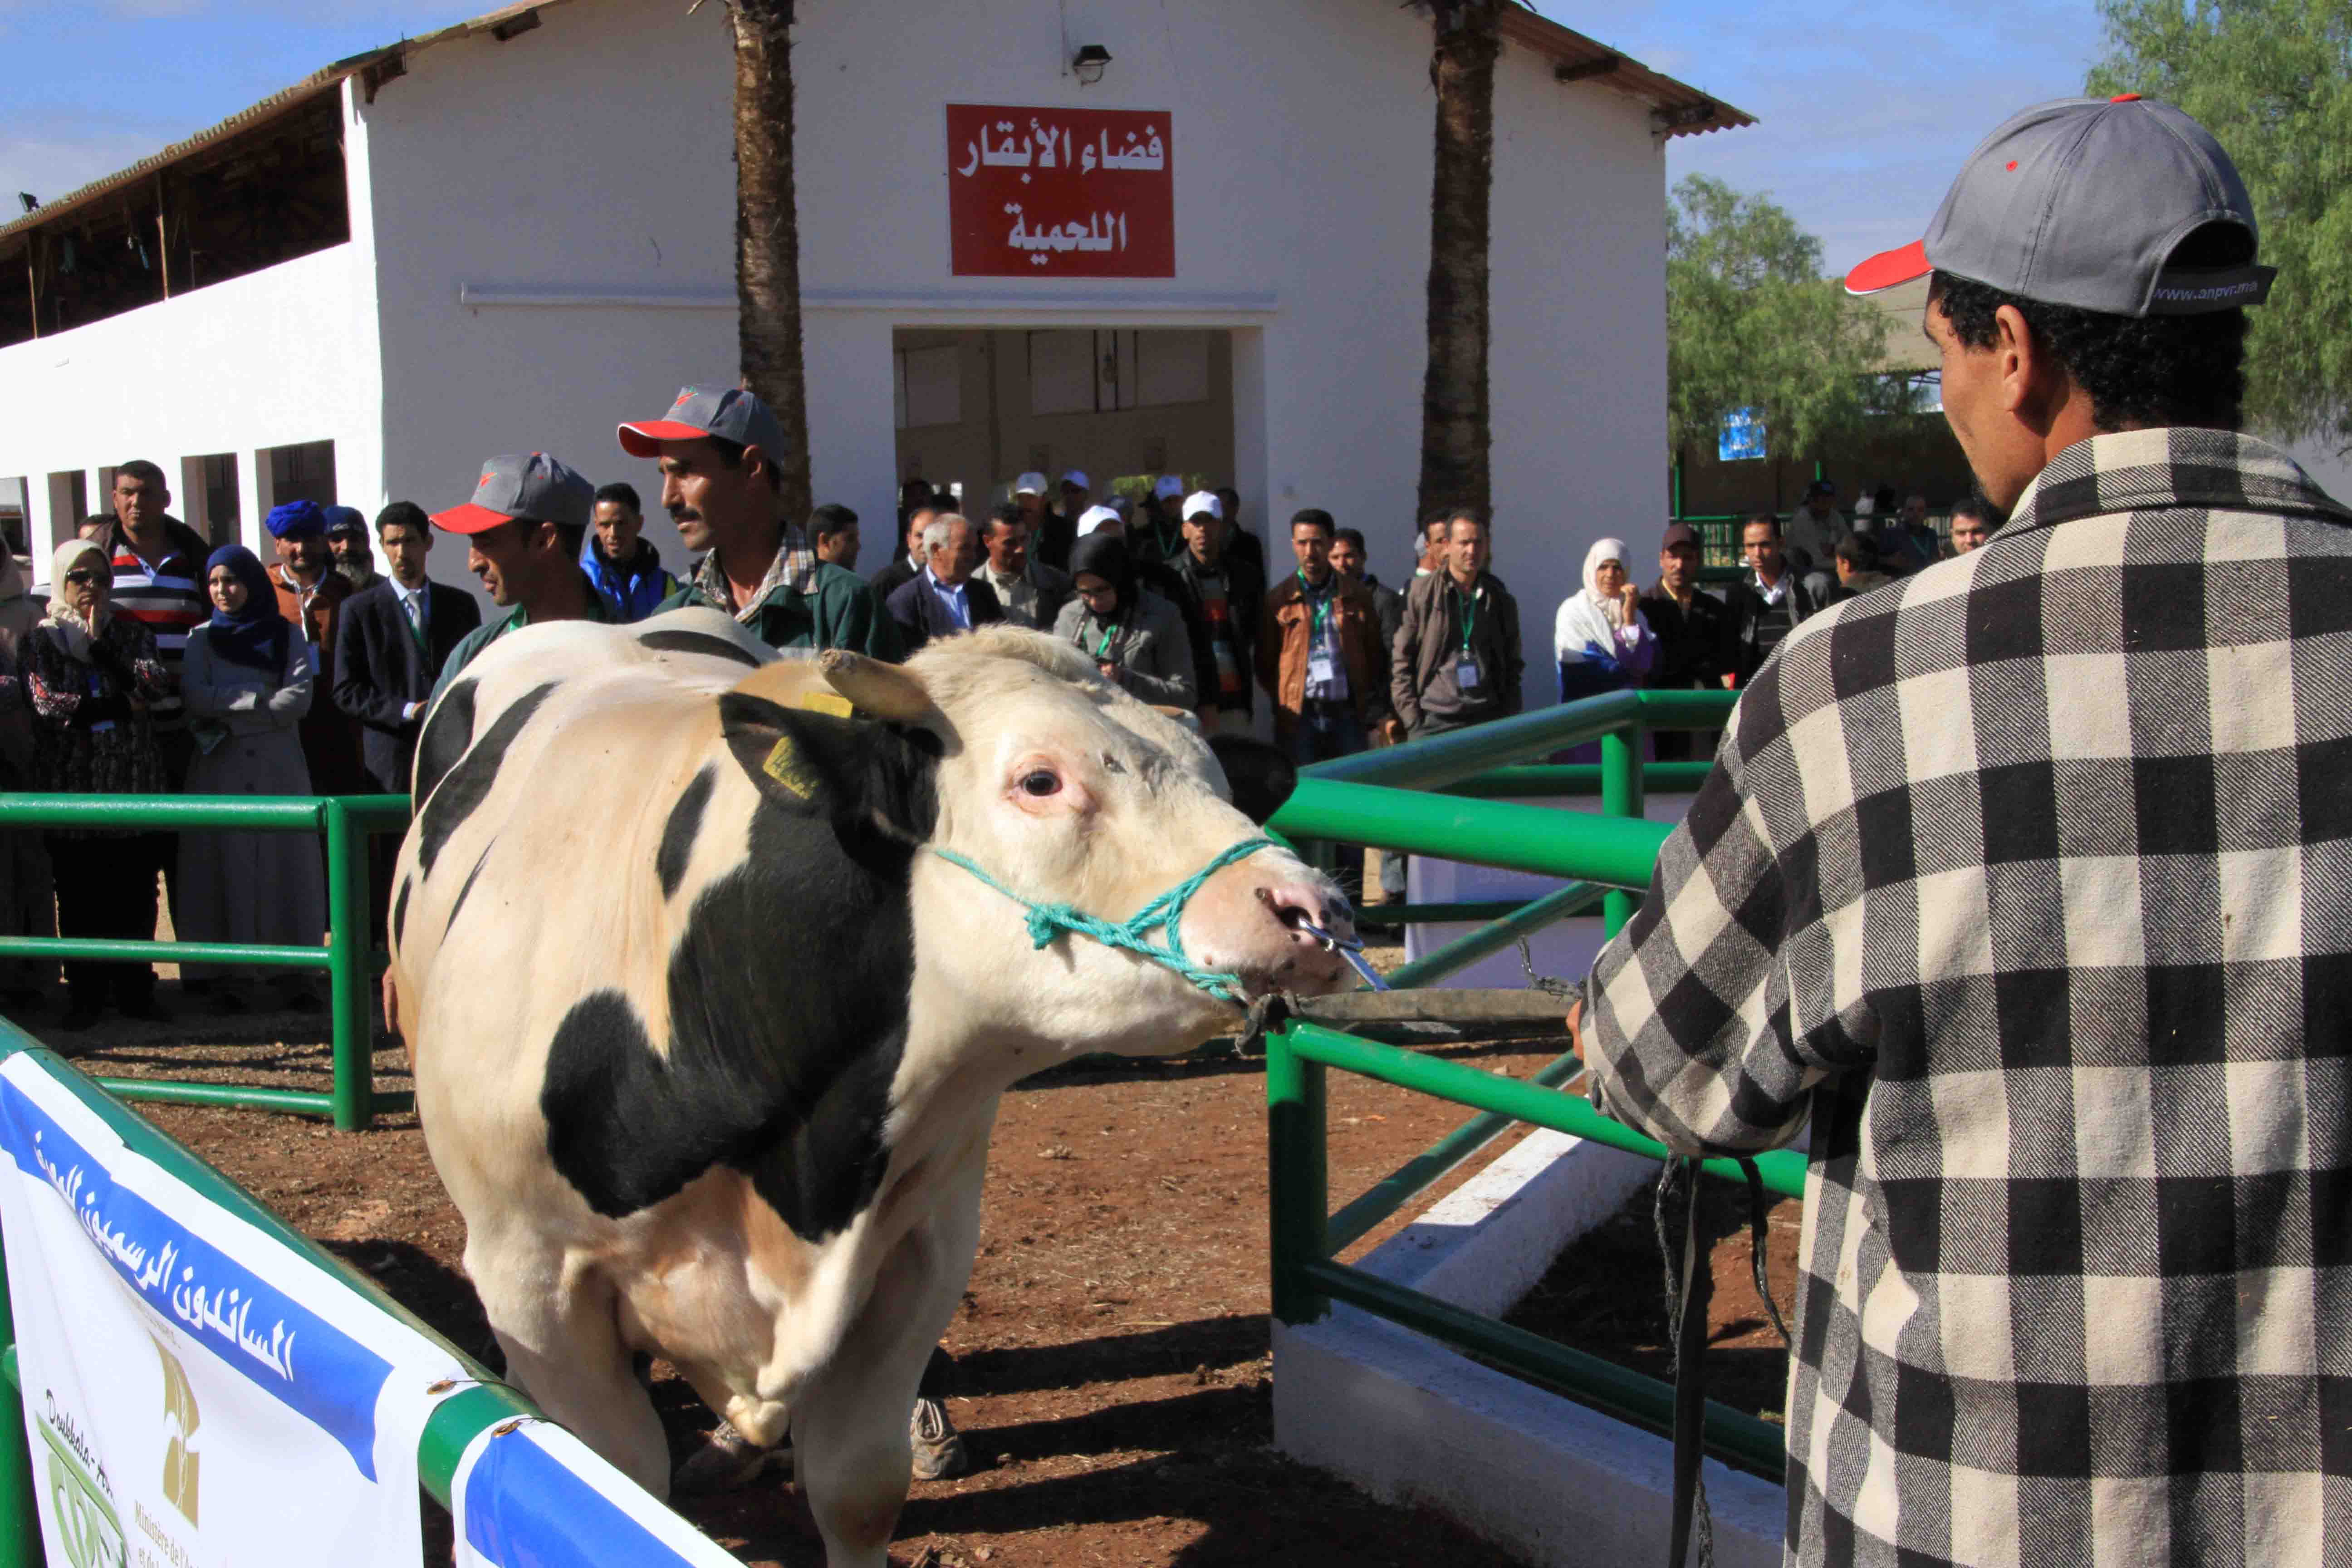 صور من المزاد العلني بالمعرض الوطني المهني لتنمية تربية الماشية سيدي بنور